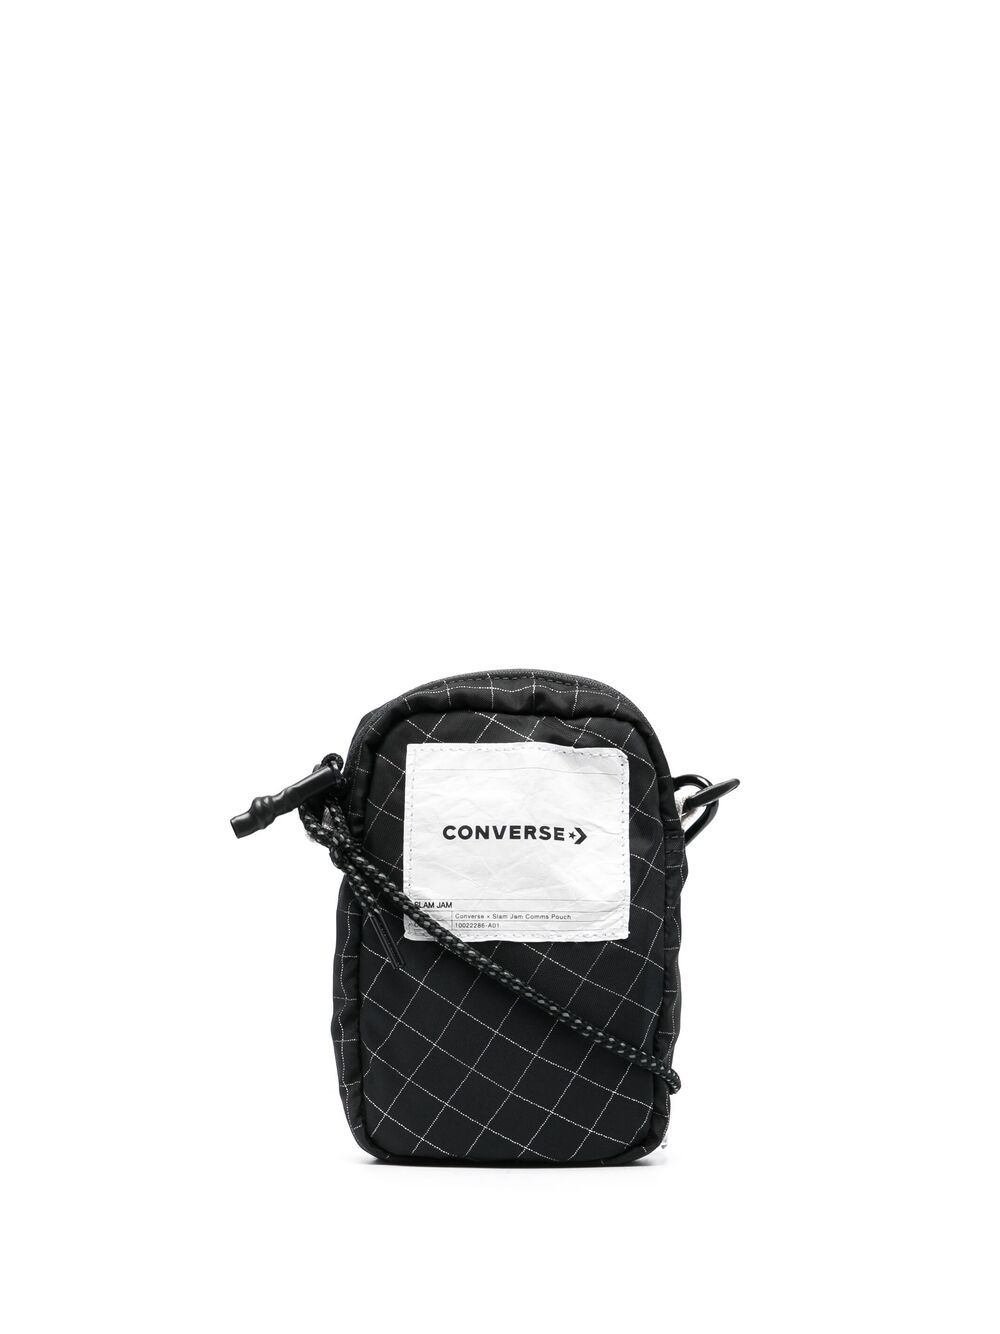 фото Converse клетчатая сумка на плечо